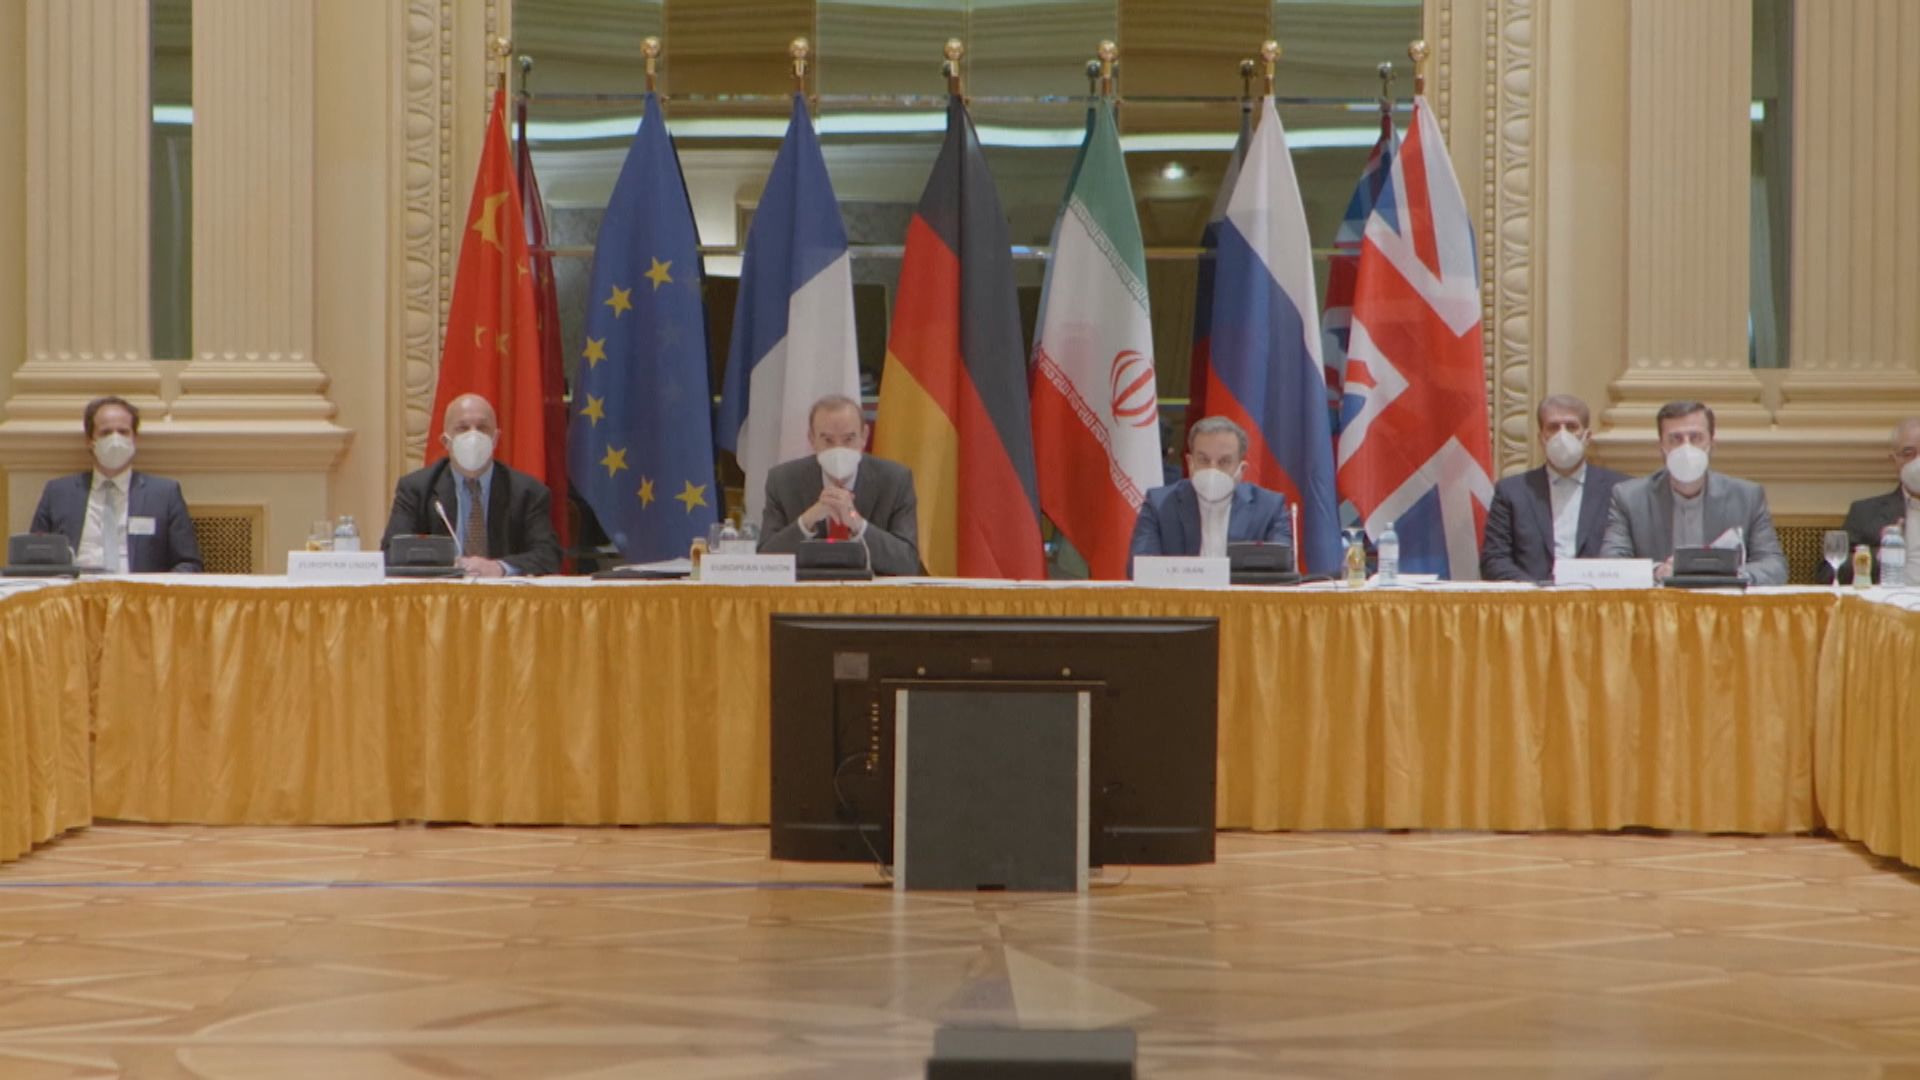 伊朗與核協議六方代表開會　與會者形容會談具建設性